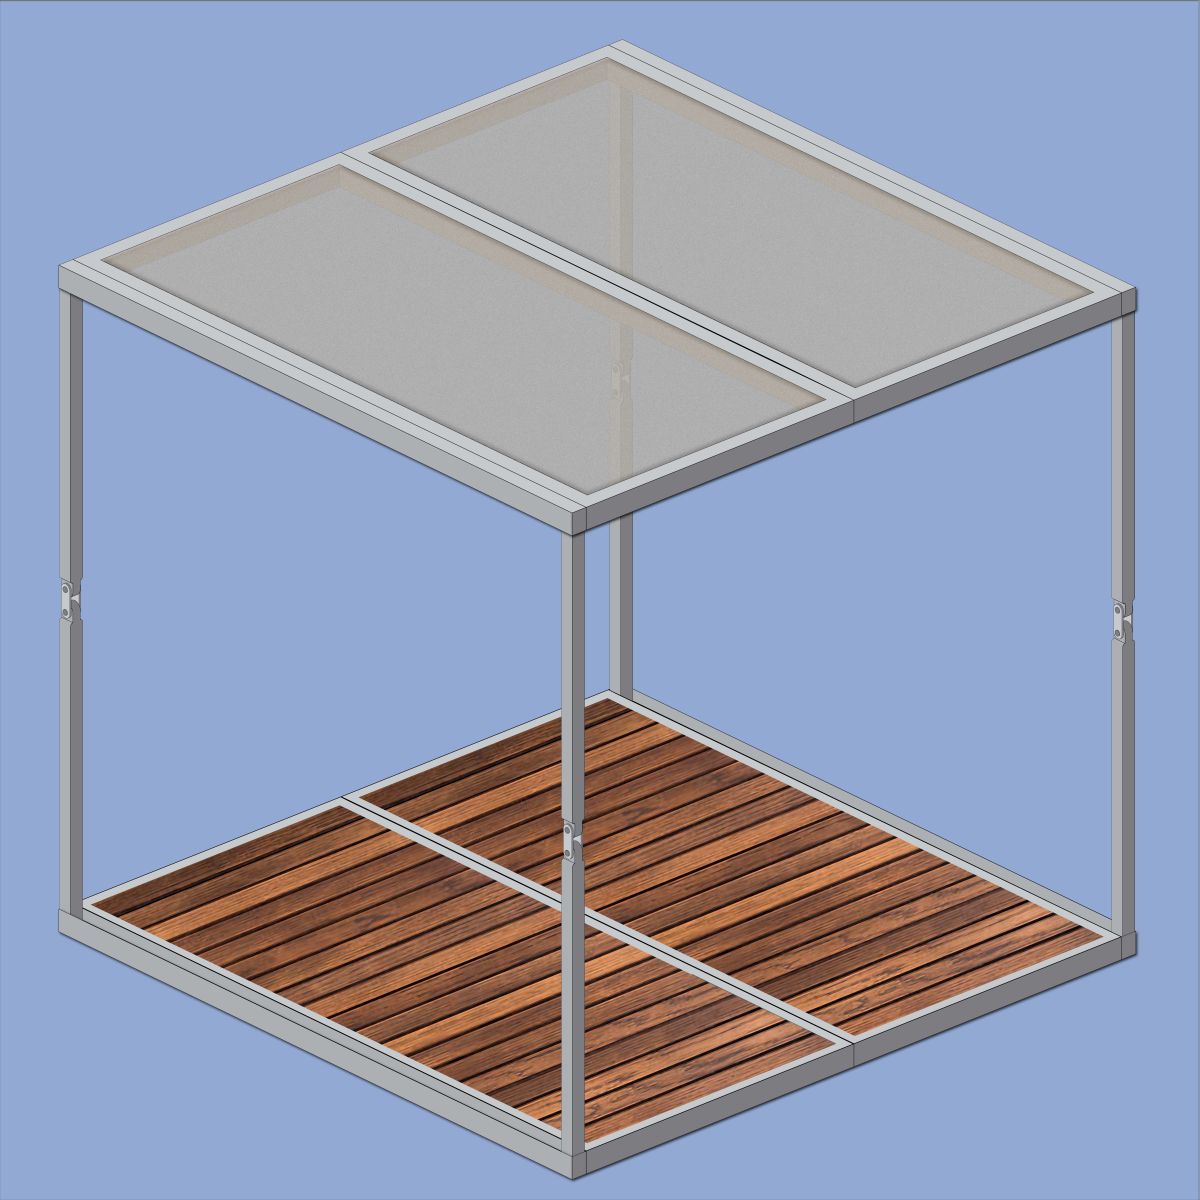 CubeX, Quarantine Pavilion, idea by Ankit Kashyap 11